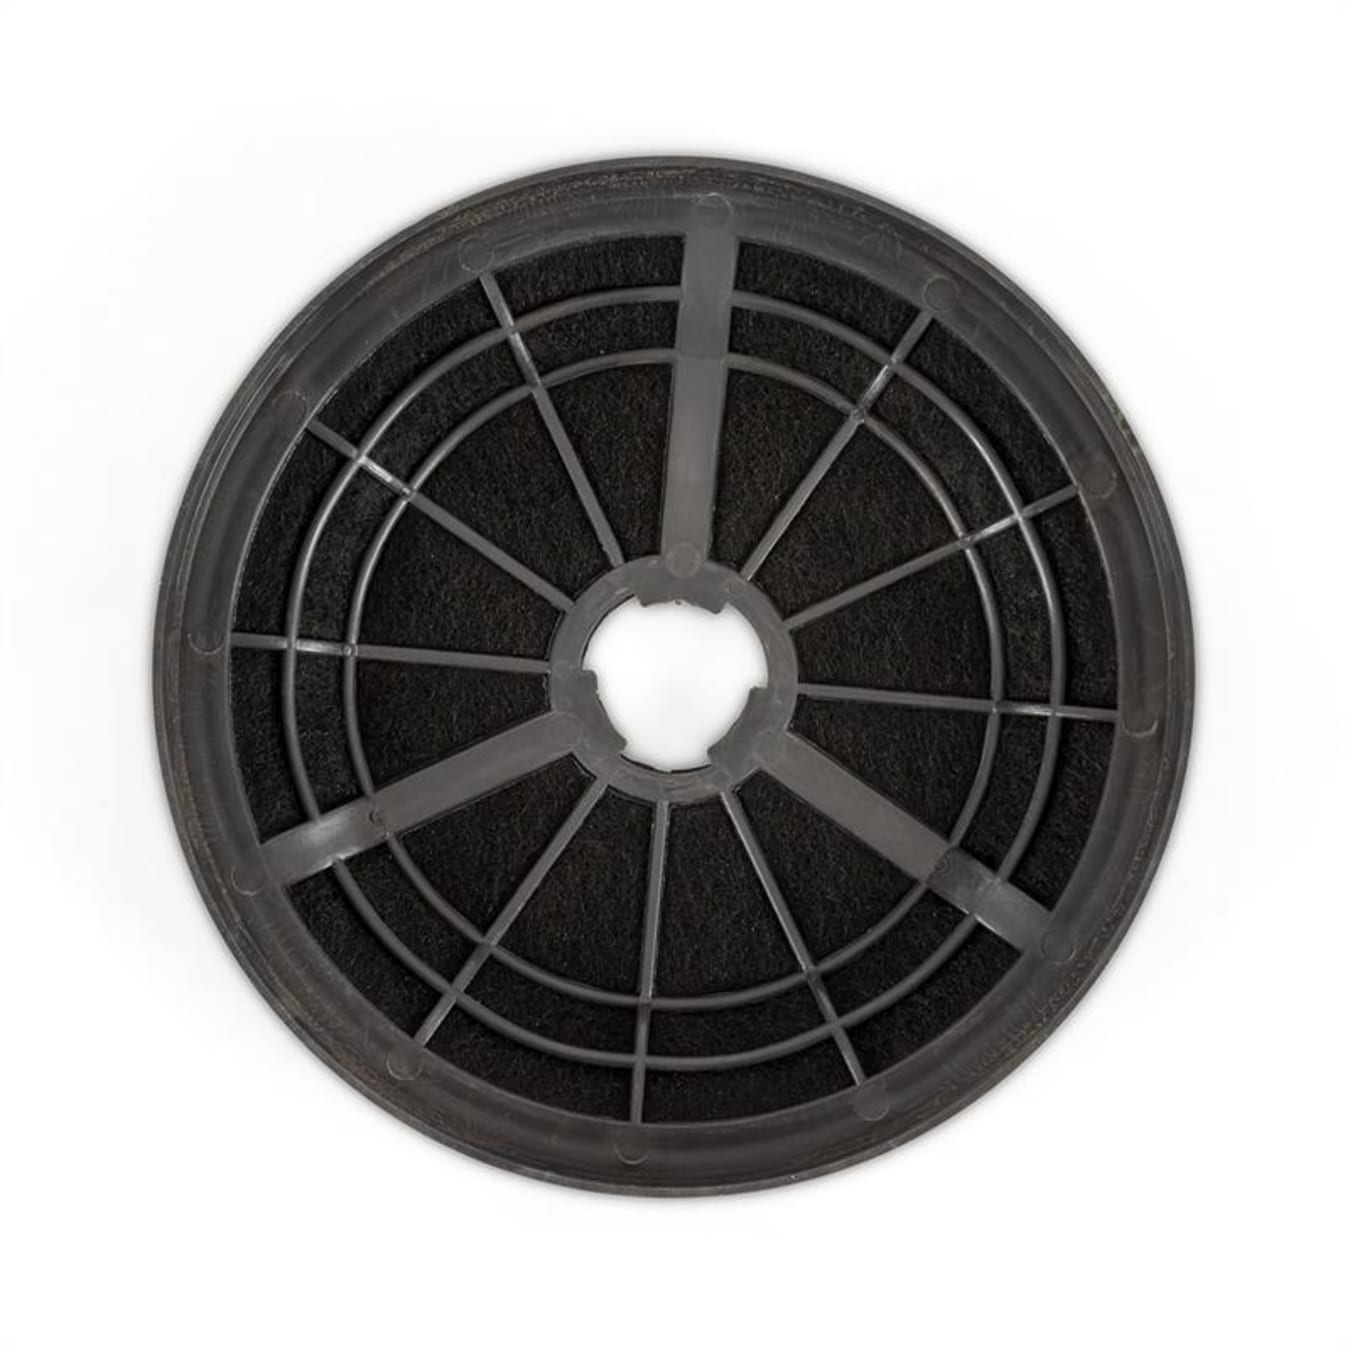 Filtre à charbon actif pour Hotte aspirante, Limelight-Eleonora, 2 x filtres,  Ø 16 cm, mode recirculation, accessoires A41 - Cdiscount Electroménager